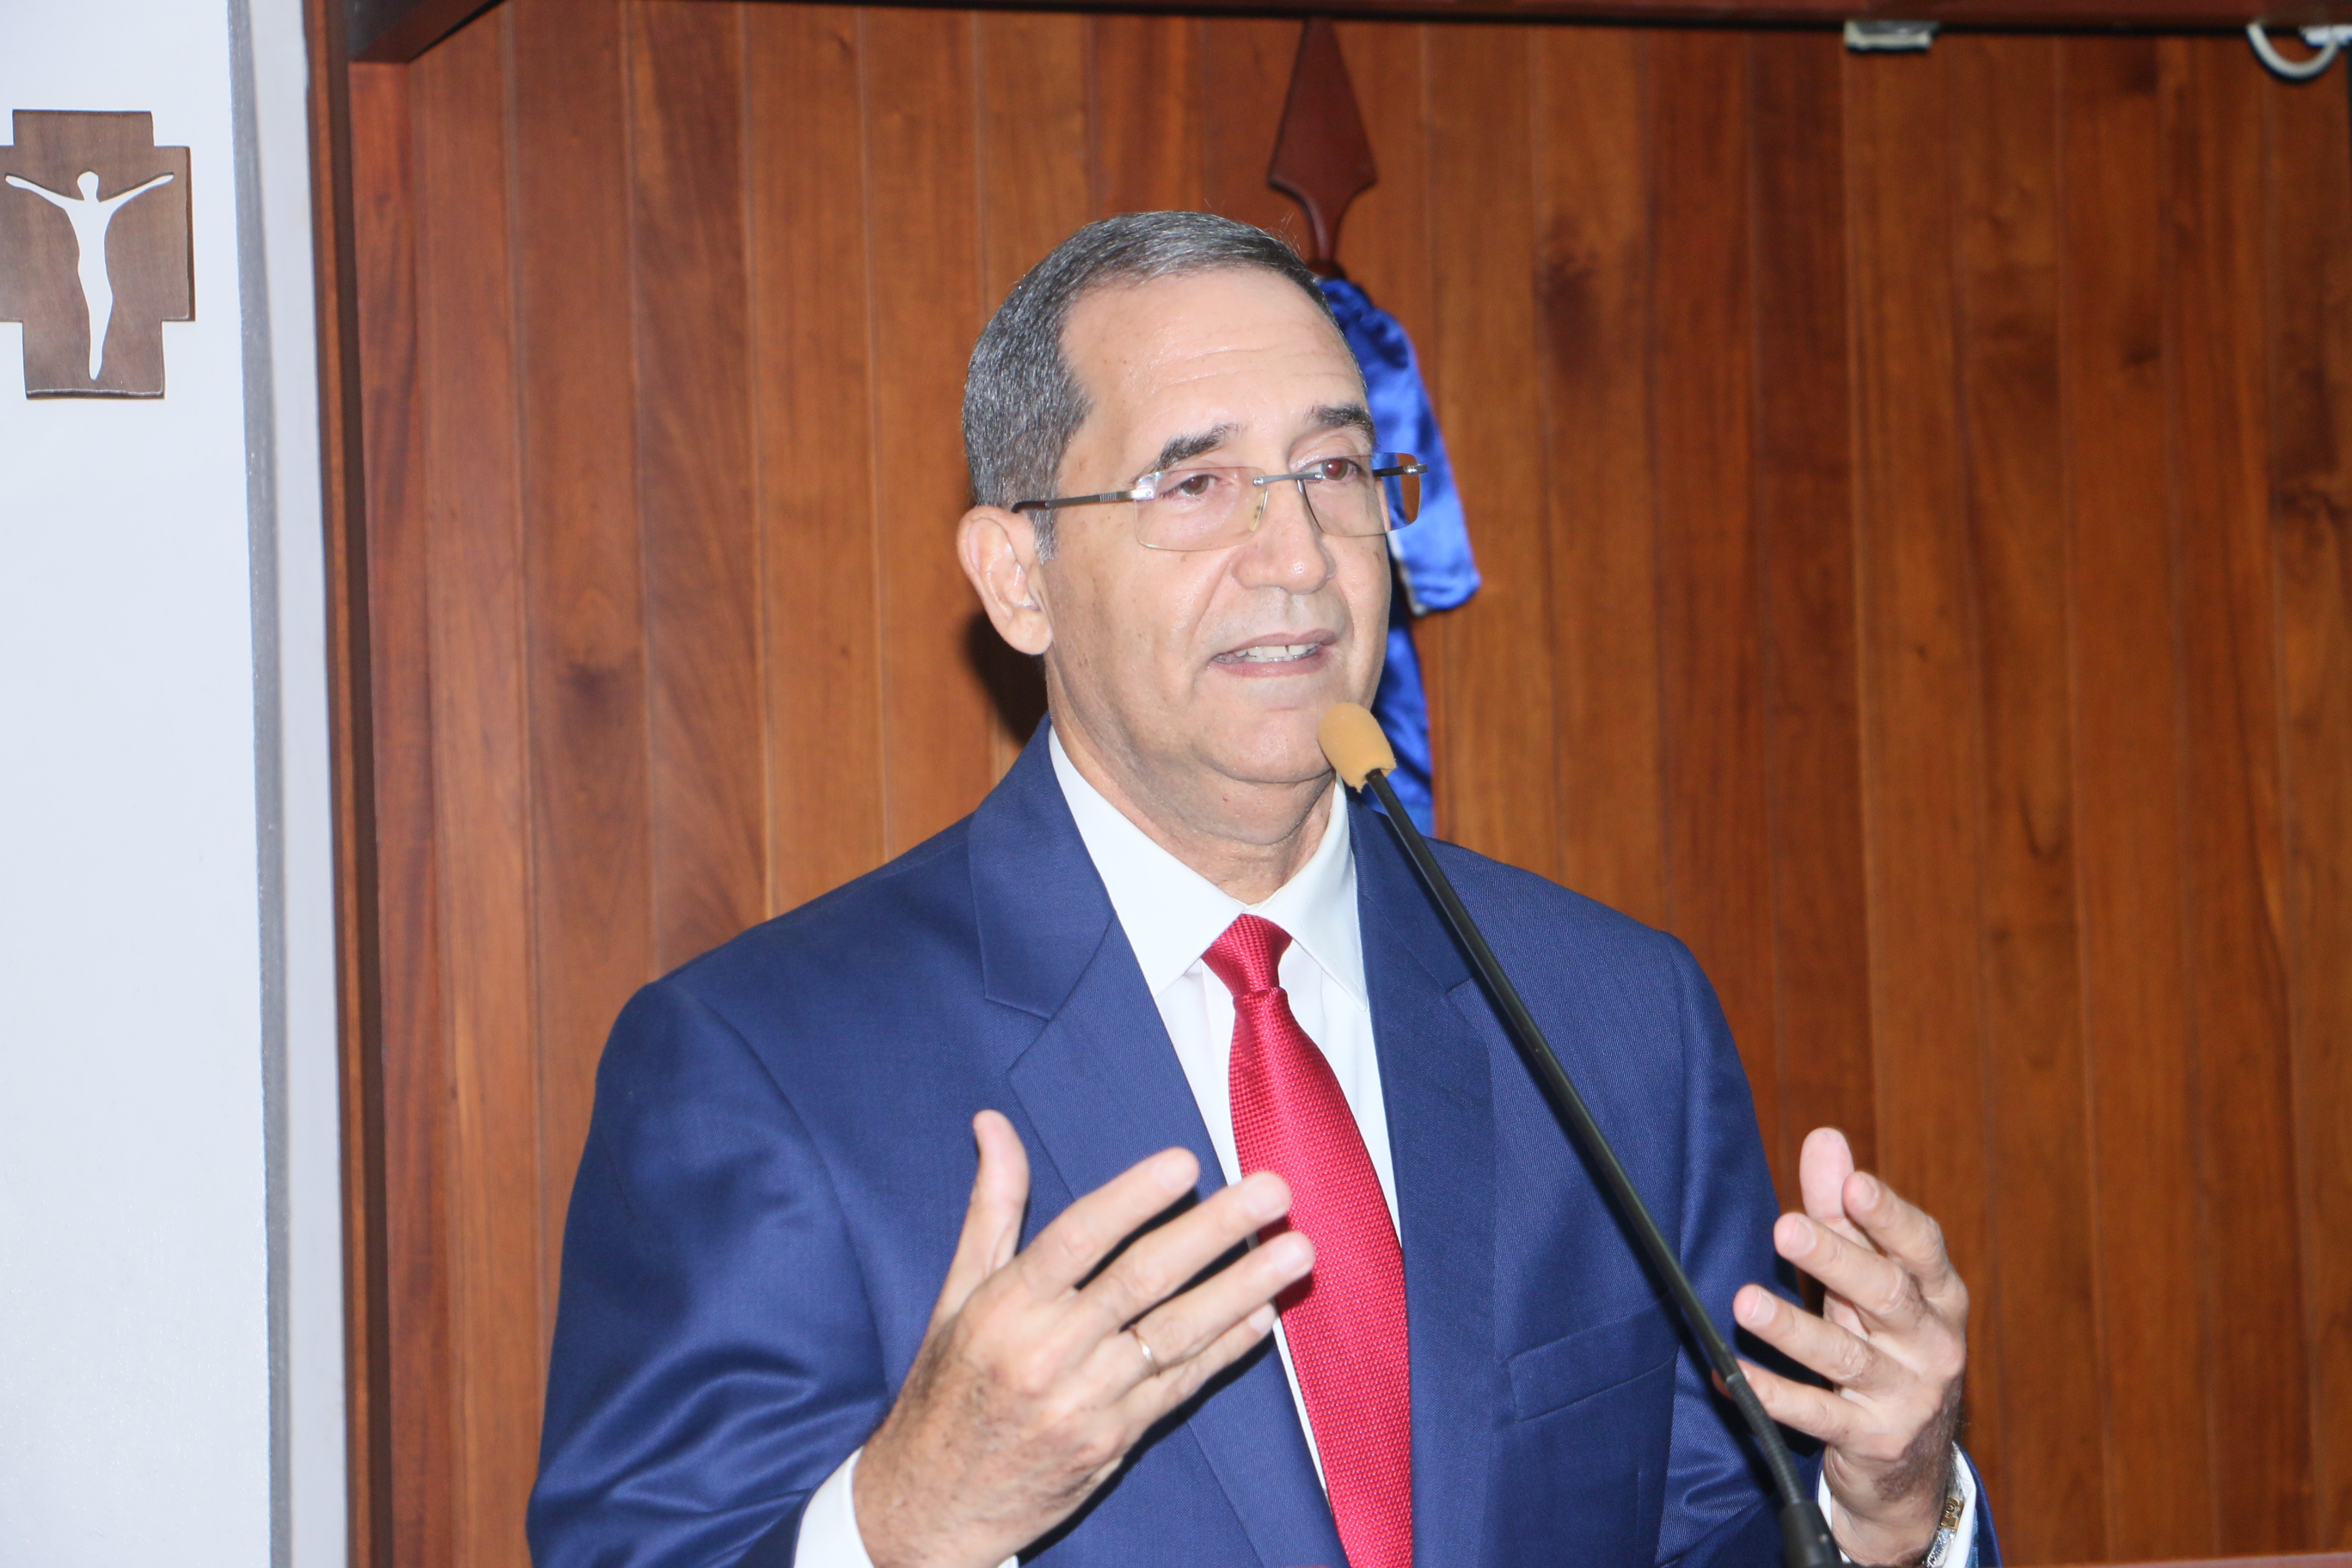 El magistrado Víctor Joaquín Castellanos Pizano dicta la conferencia “La acción de amparo” en la PUCMM